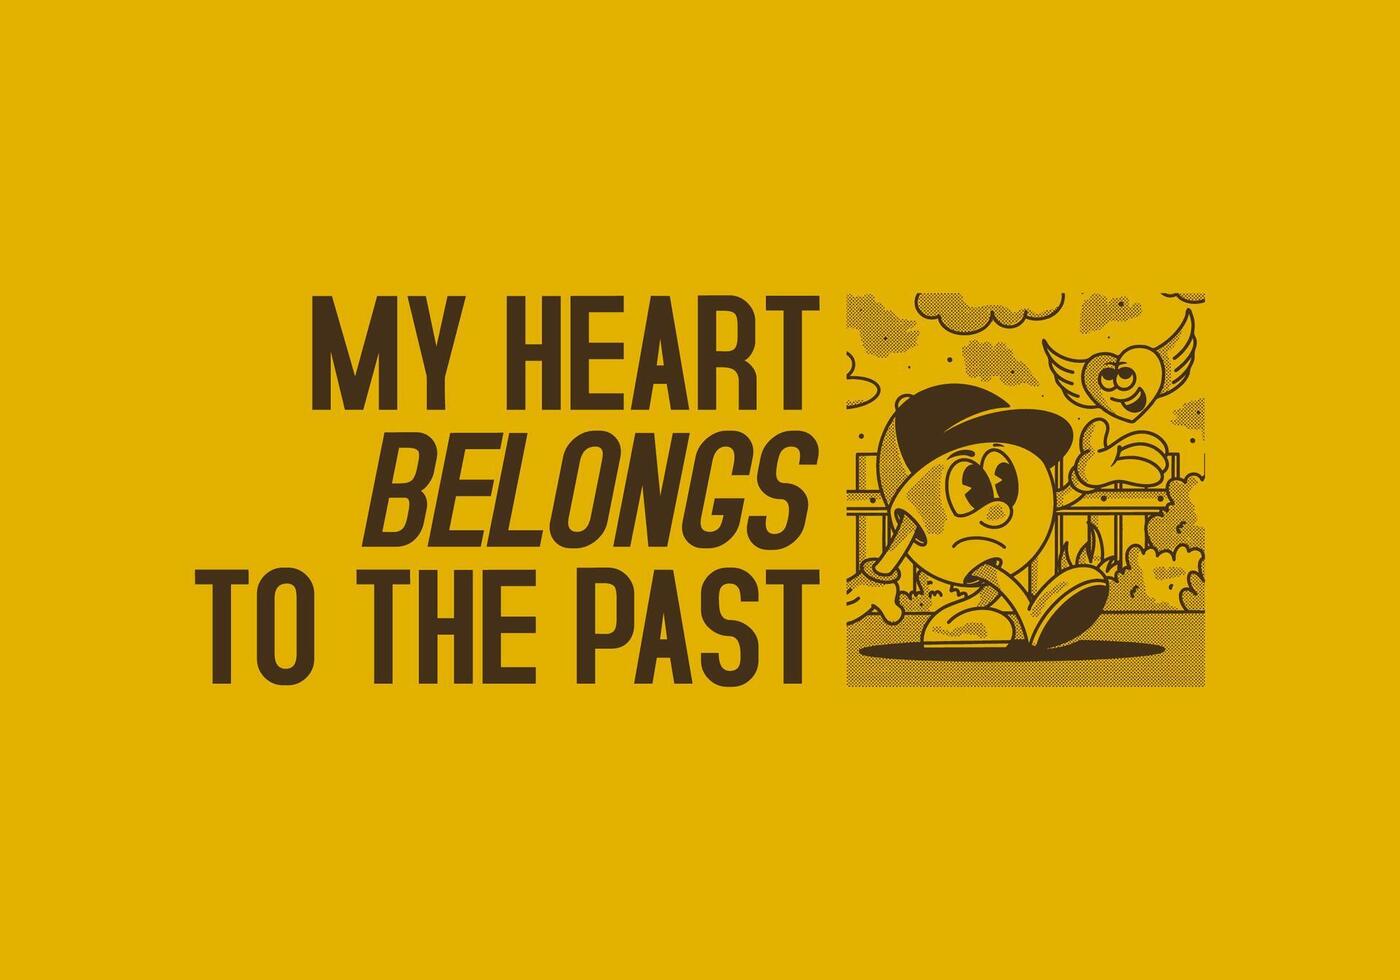 mi corazón pertenecer a a el pasado. personaje ilustración de un pelota cabeza y volador corazón vector